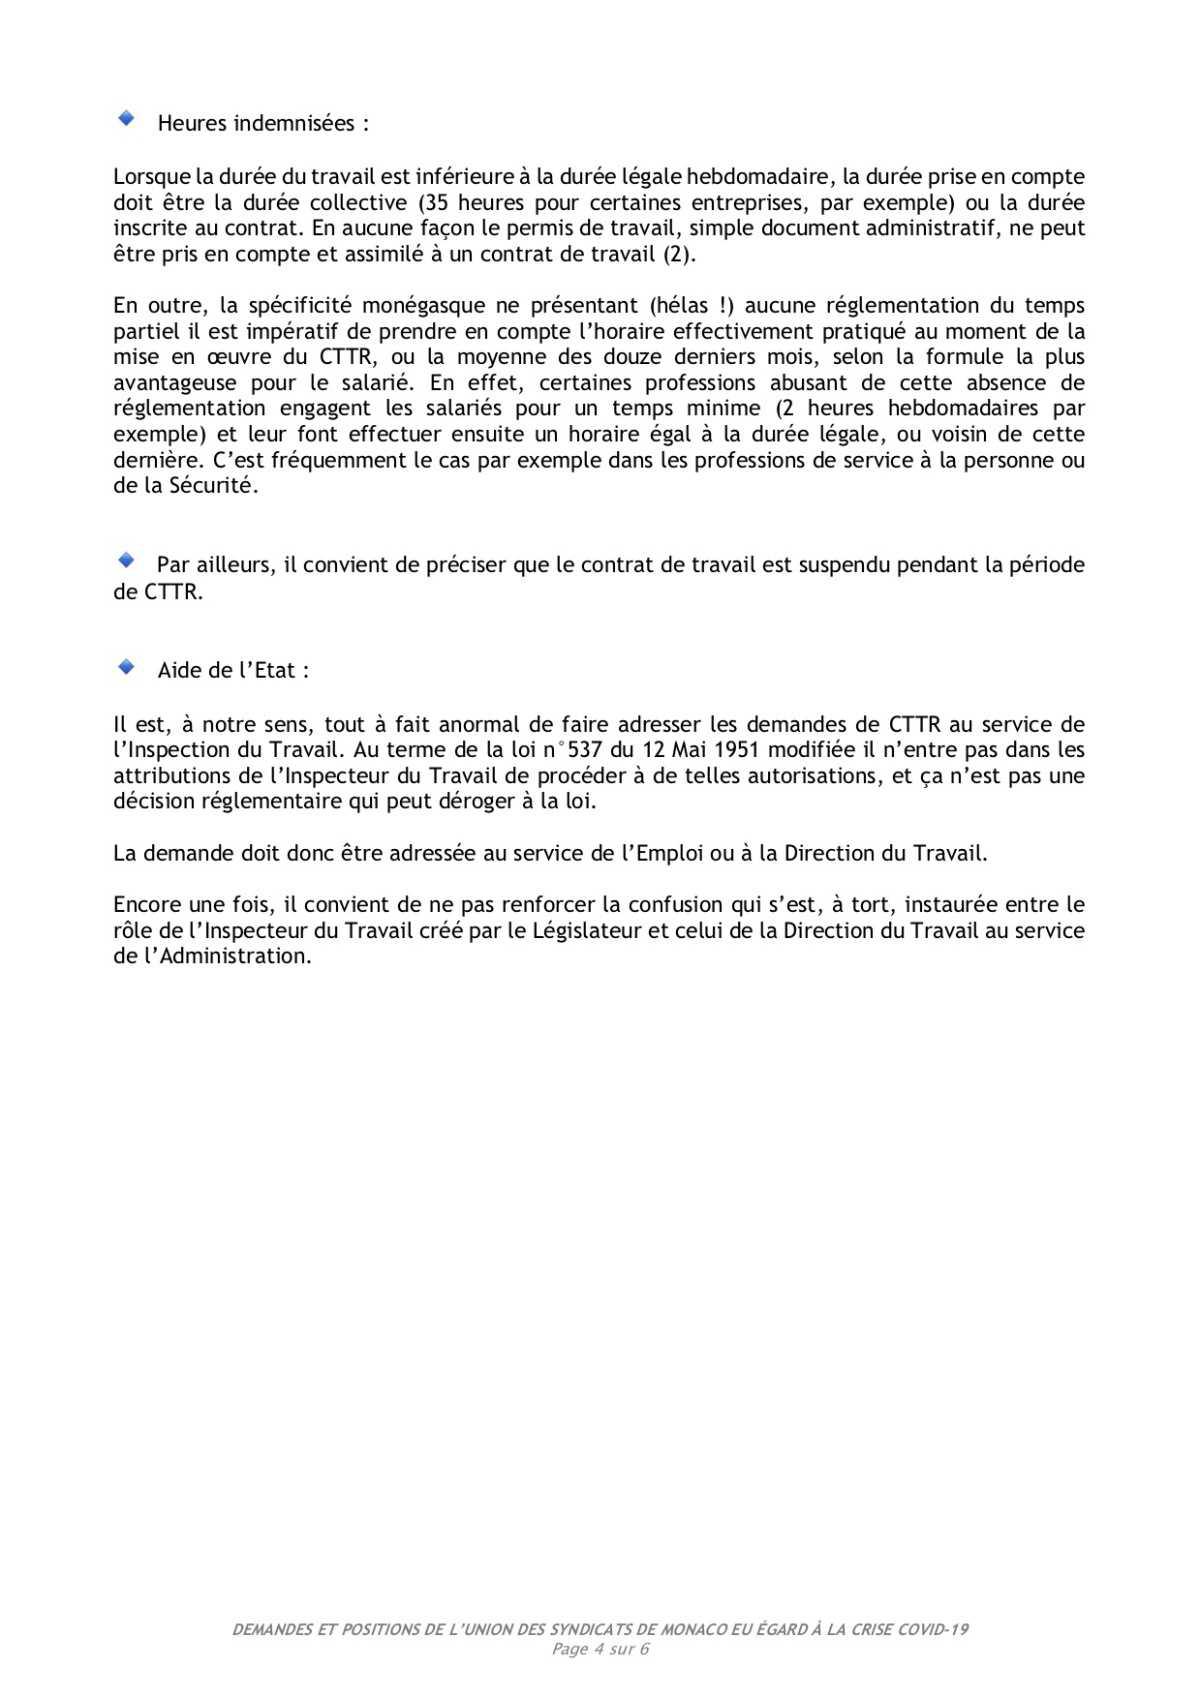 Demandes et positions de l'Union des Syndicats de Monaco eu égard à la crise Covid-19